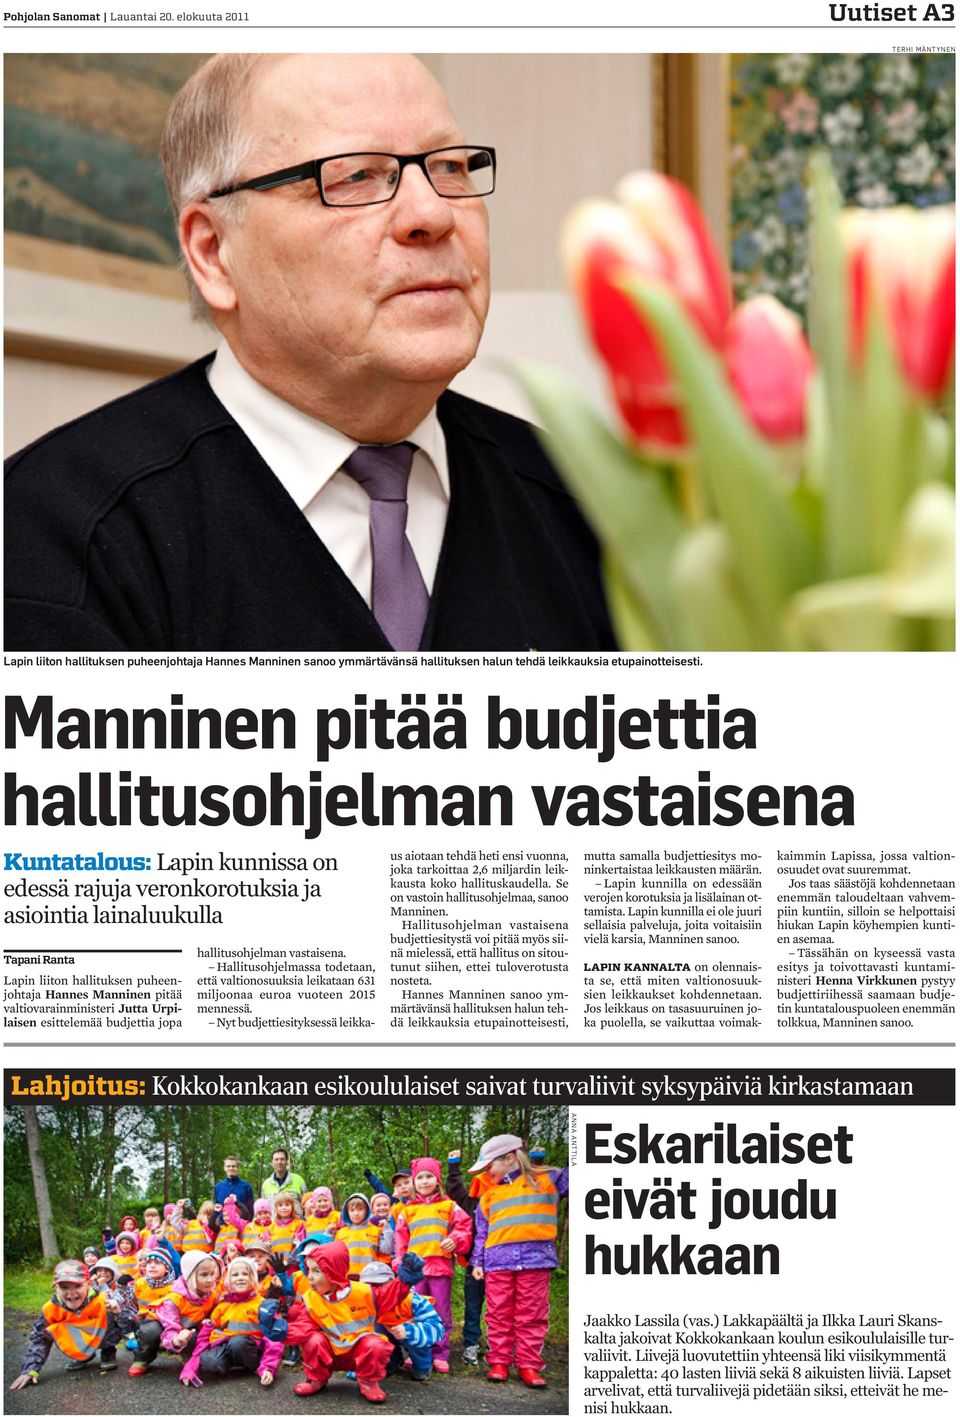 Manninen pitää valtiovarainministeri Jutta Urpilaisen esittelemää budjettia jopa hallitusohjelman vastaisena.